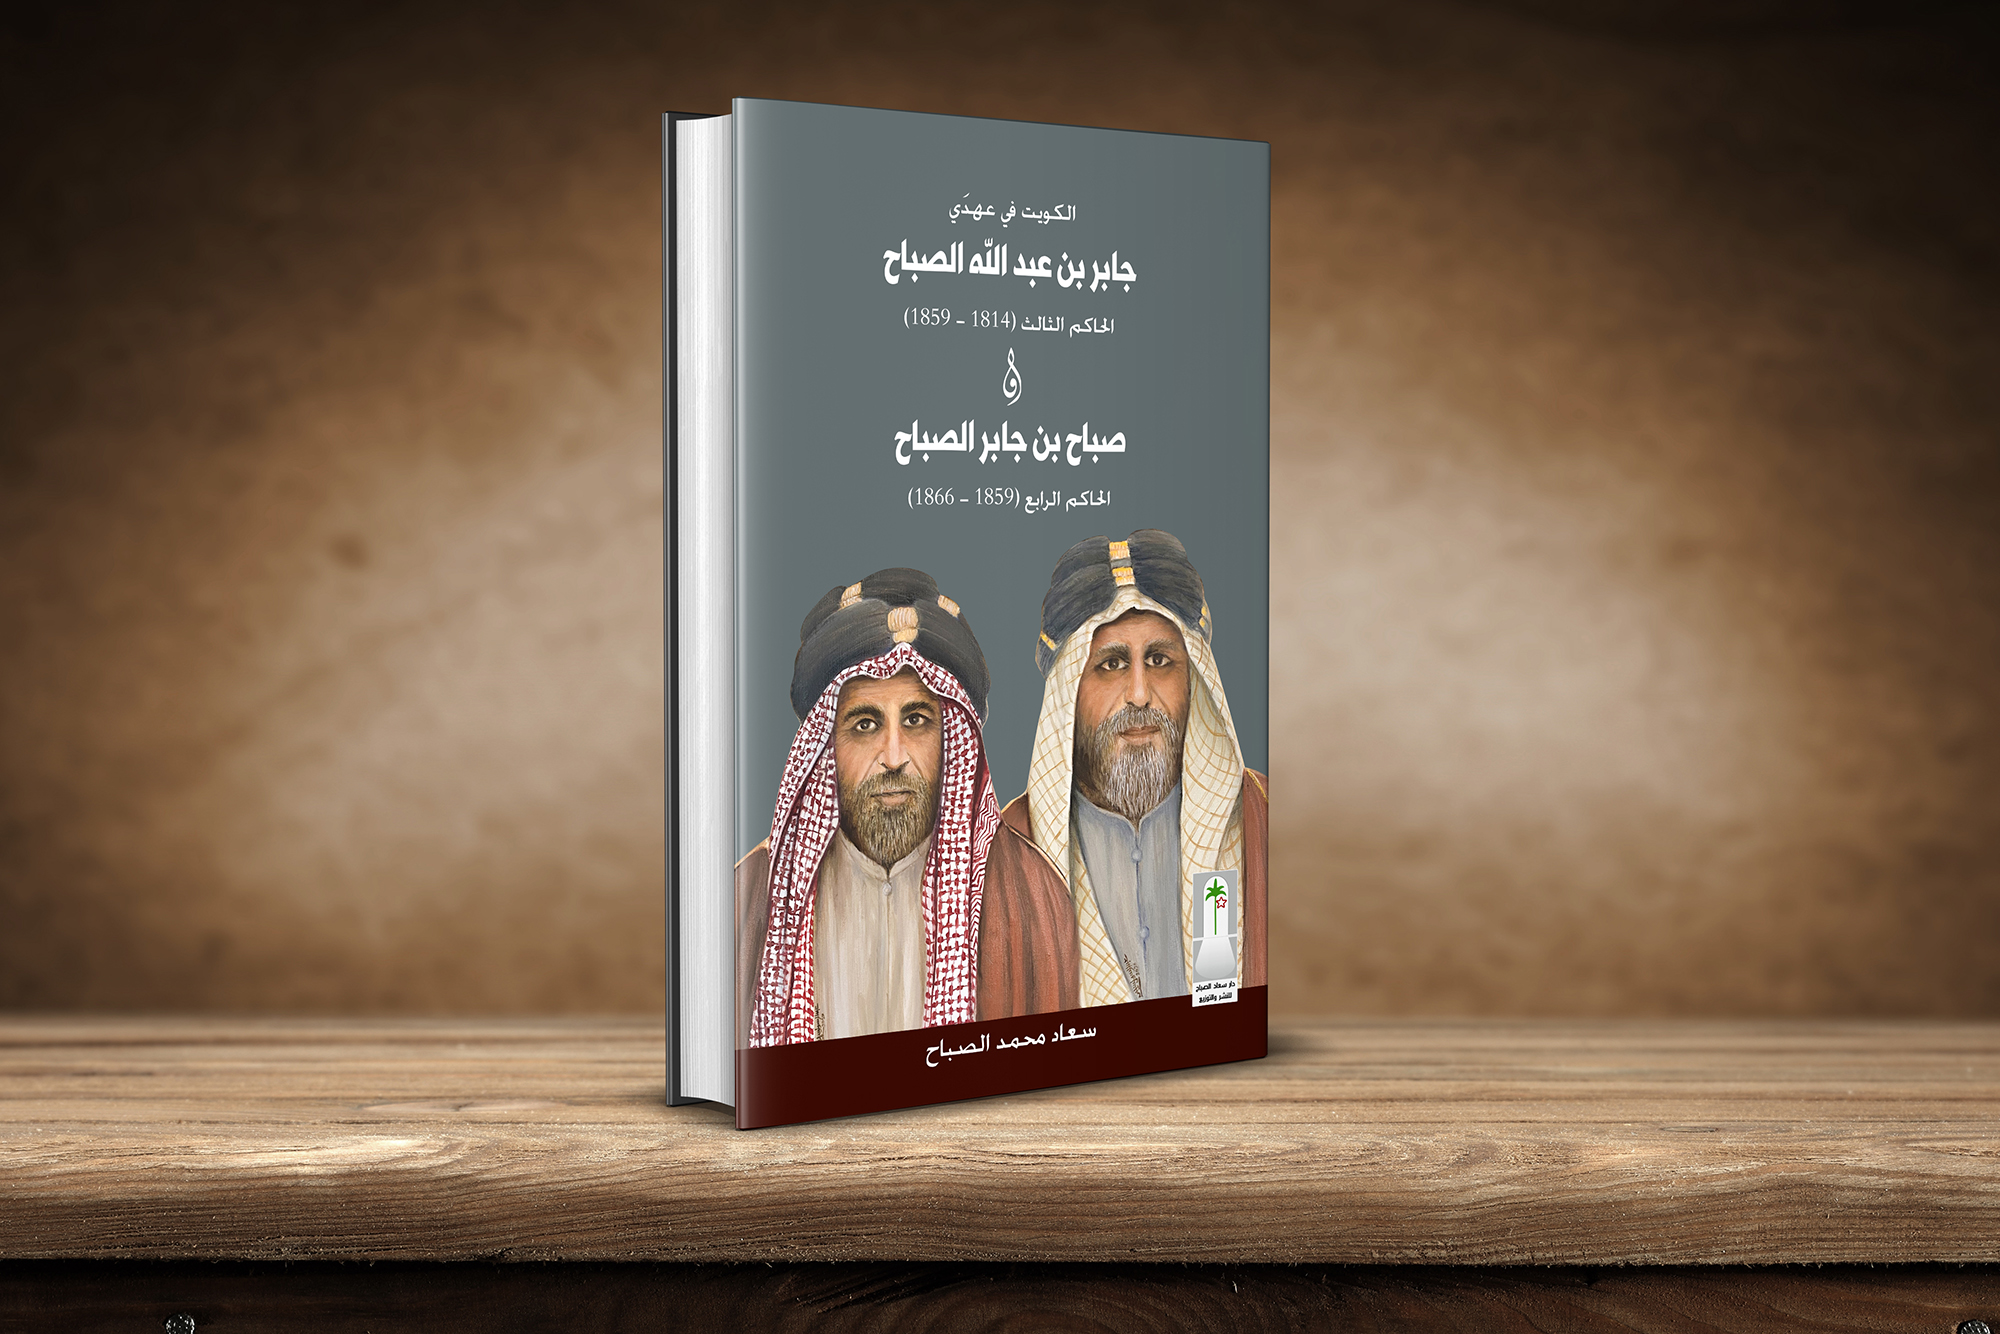 Le Koweït durant les mandats de Jaber Ben Abdallah Al-Sabah et Sabah Ben Jaber Al-Sabah